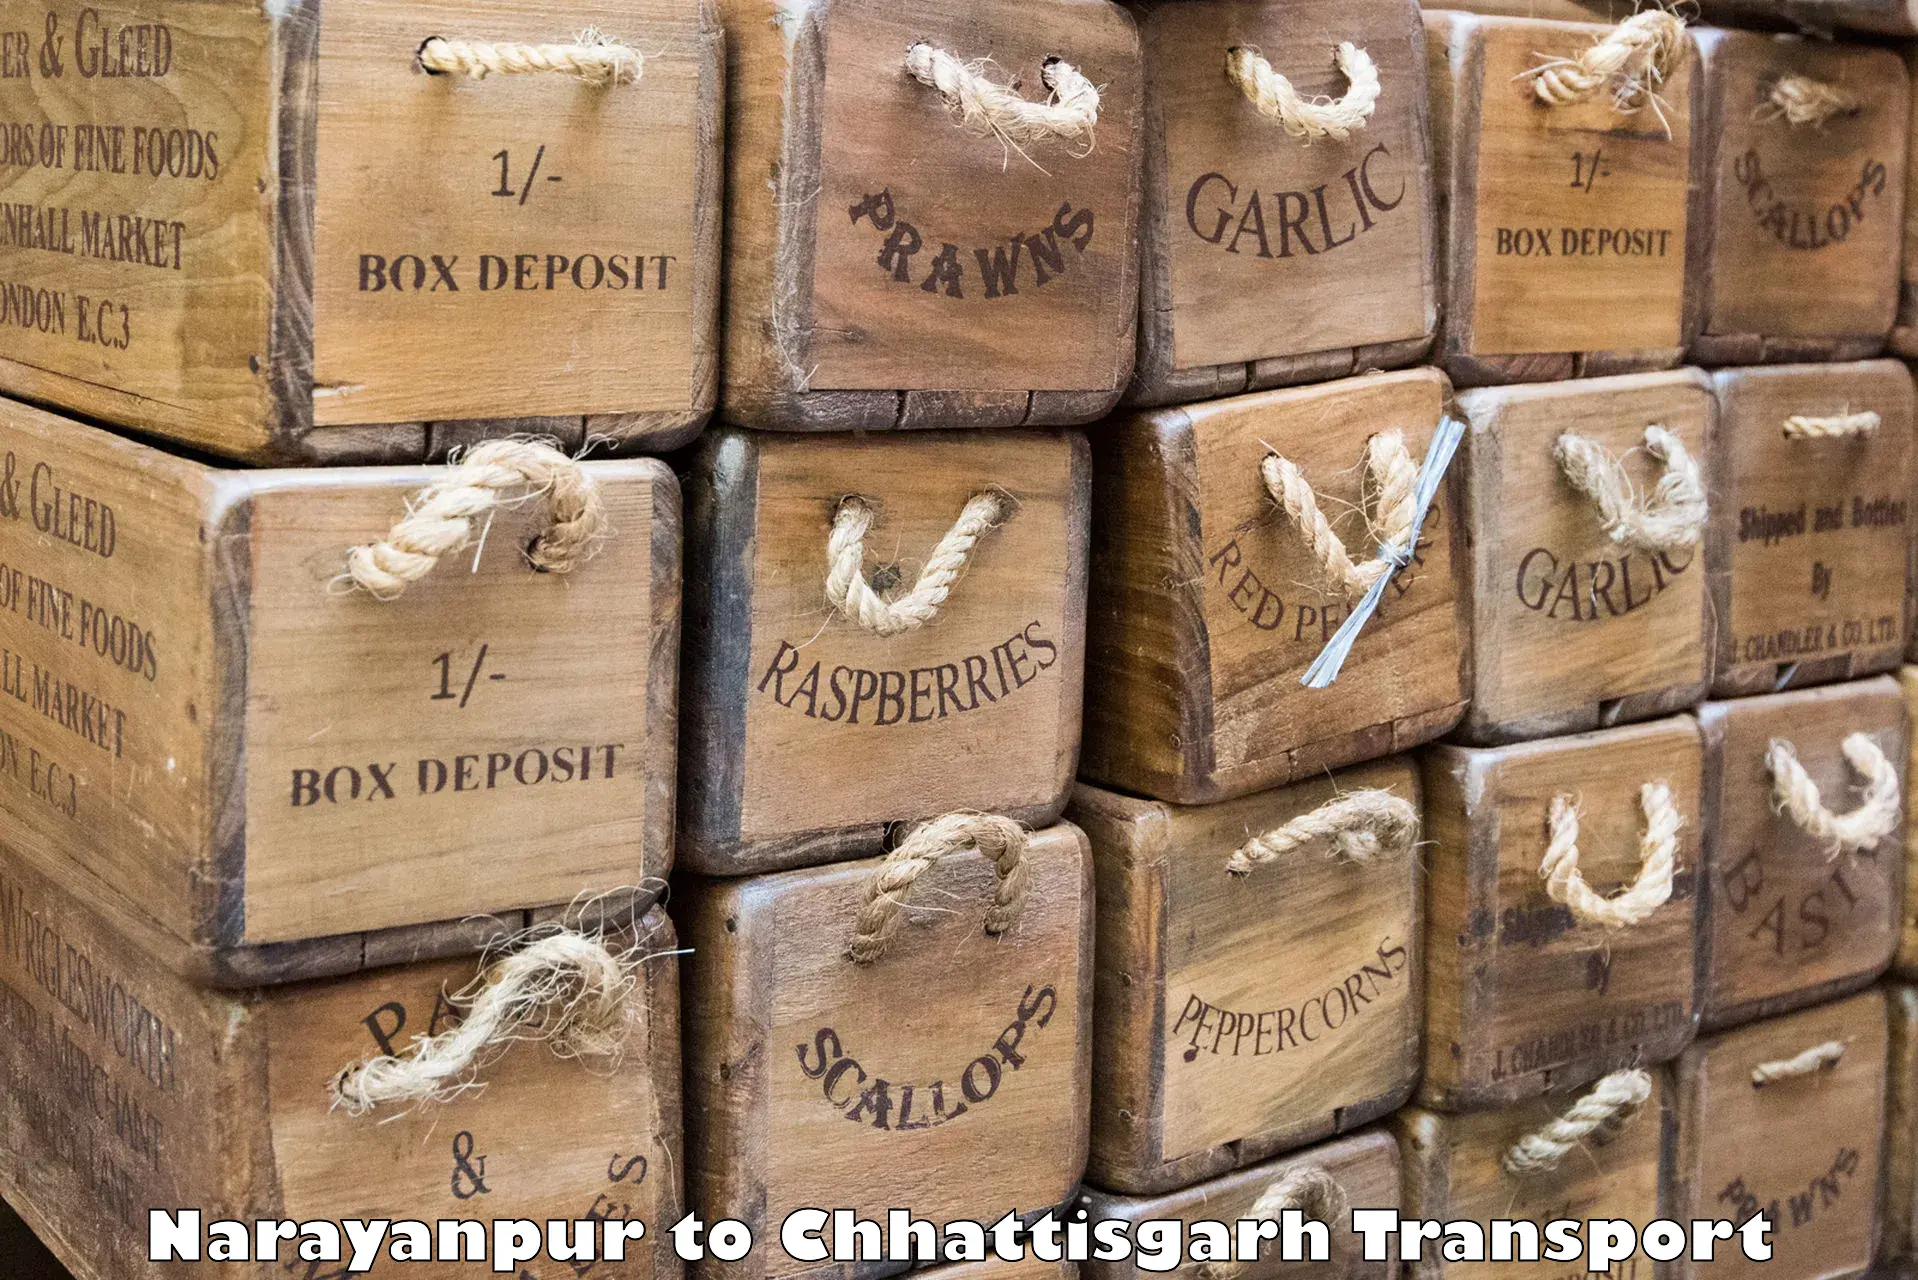 Shipping partner Narayanpur to Dhamtari